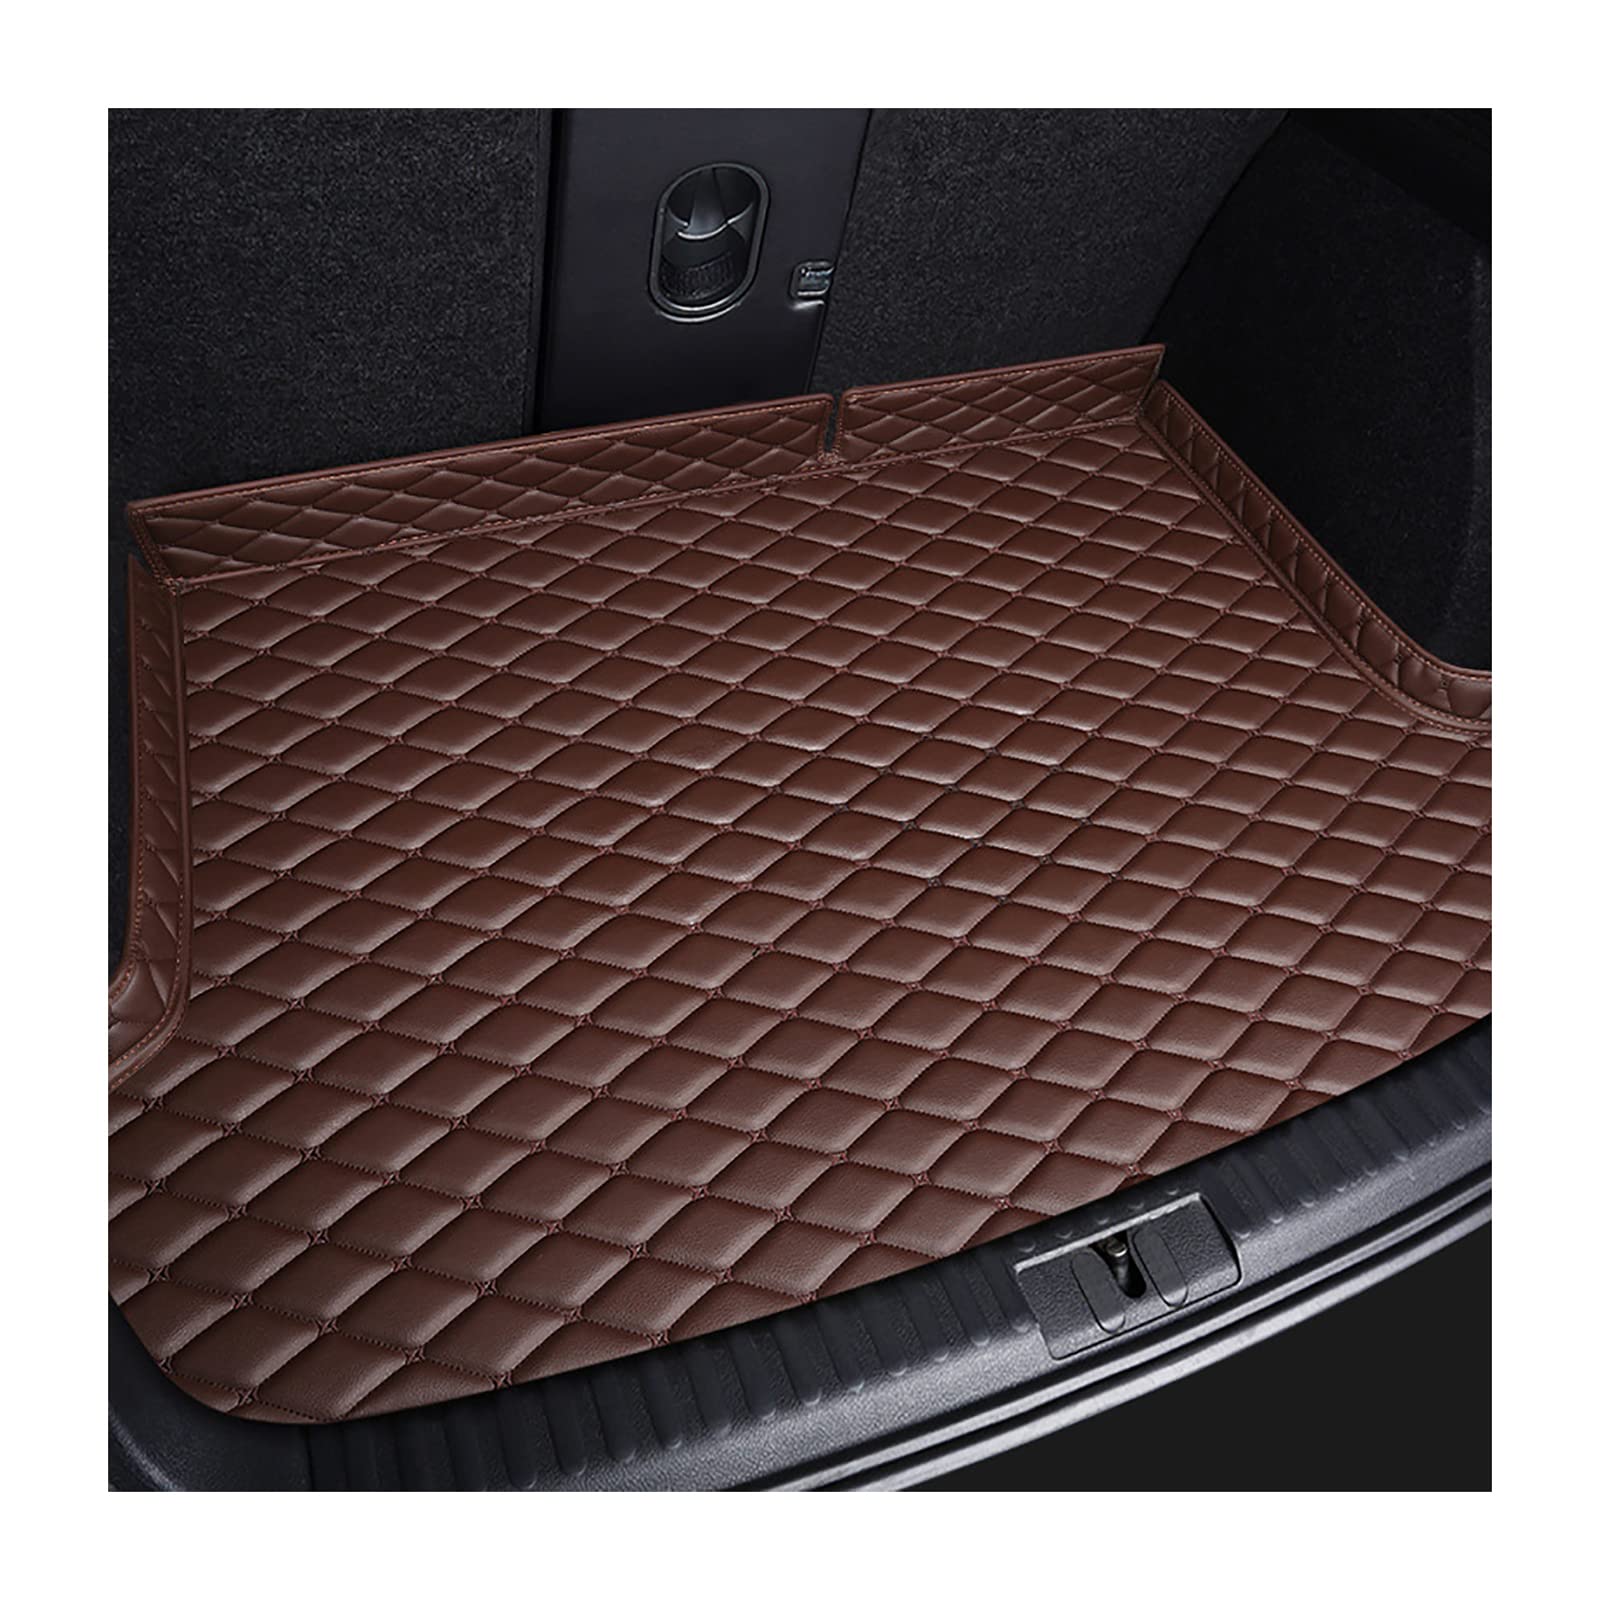 Kompatibel für Volvo XC90 7seats 2015+, Spezielle Kofferraummatte, Hohe Seitliche Ablagepolster, Staubdichtes, Wasserdichtes Schutzkissen,5-Coffee von AIMQIAD